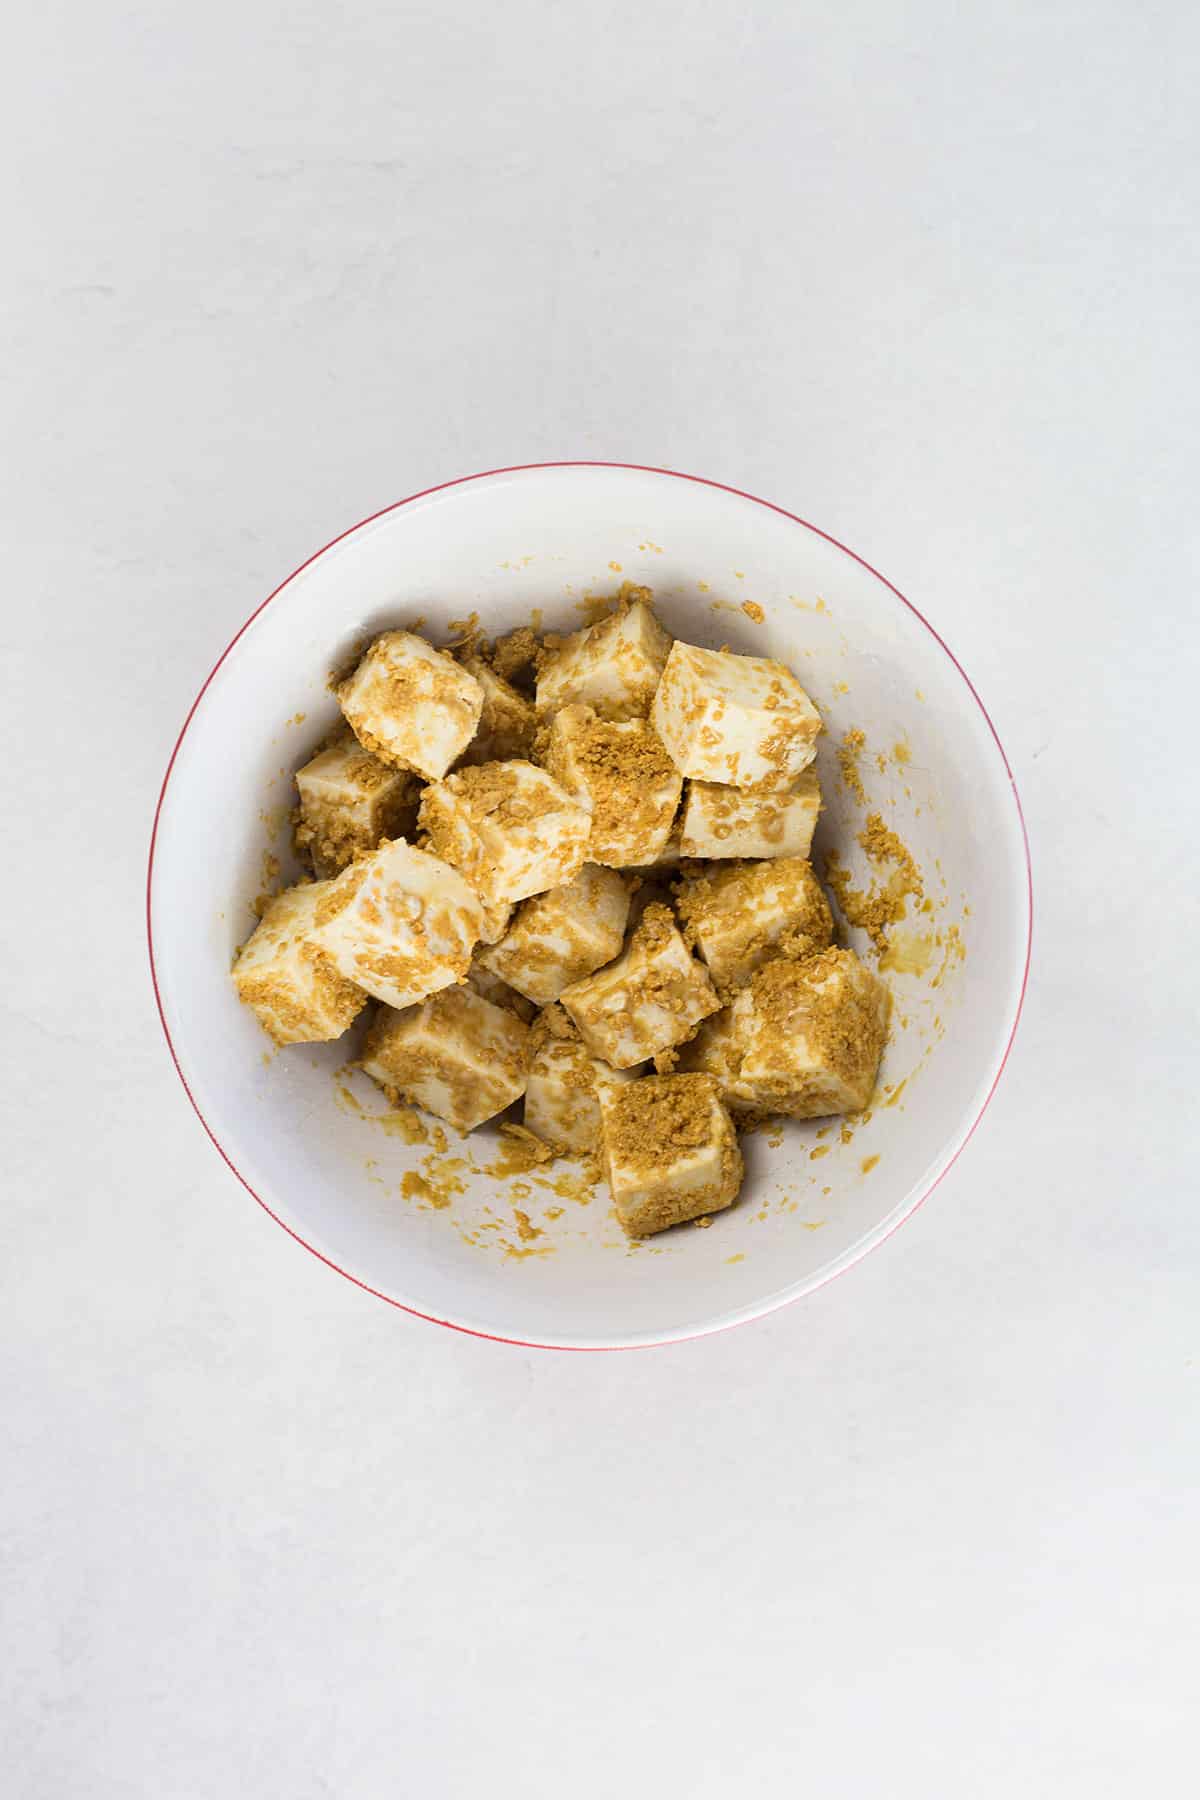 Tofu coated in golden cornstarch mixture.